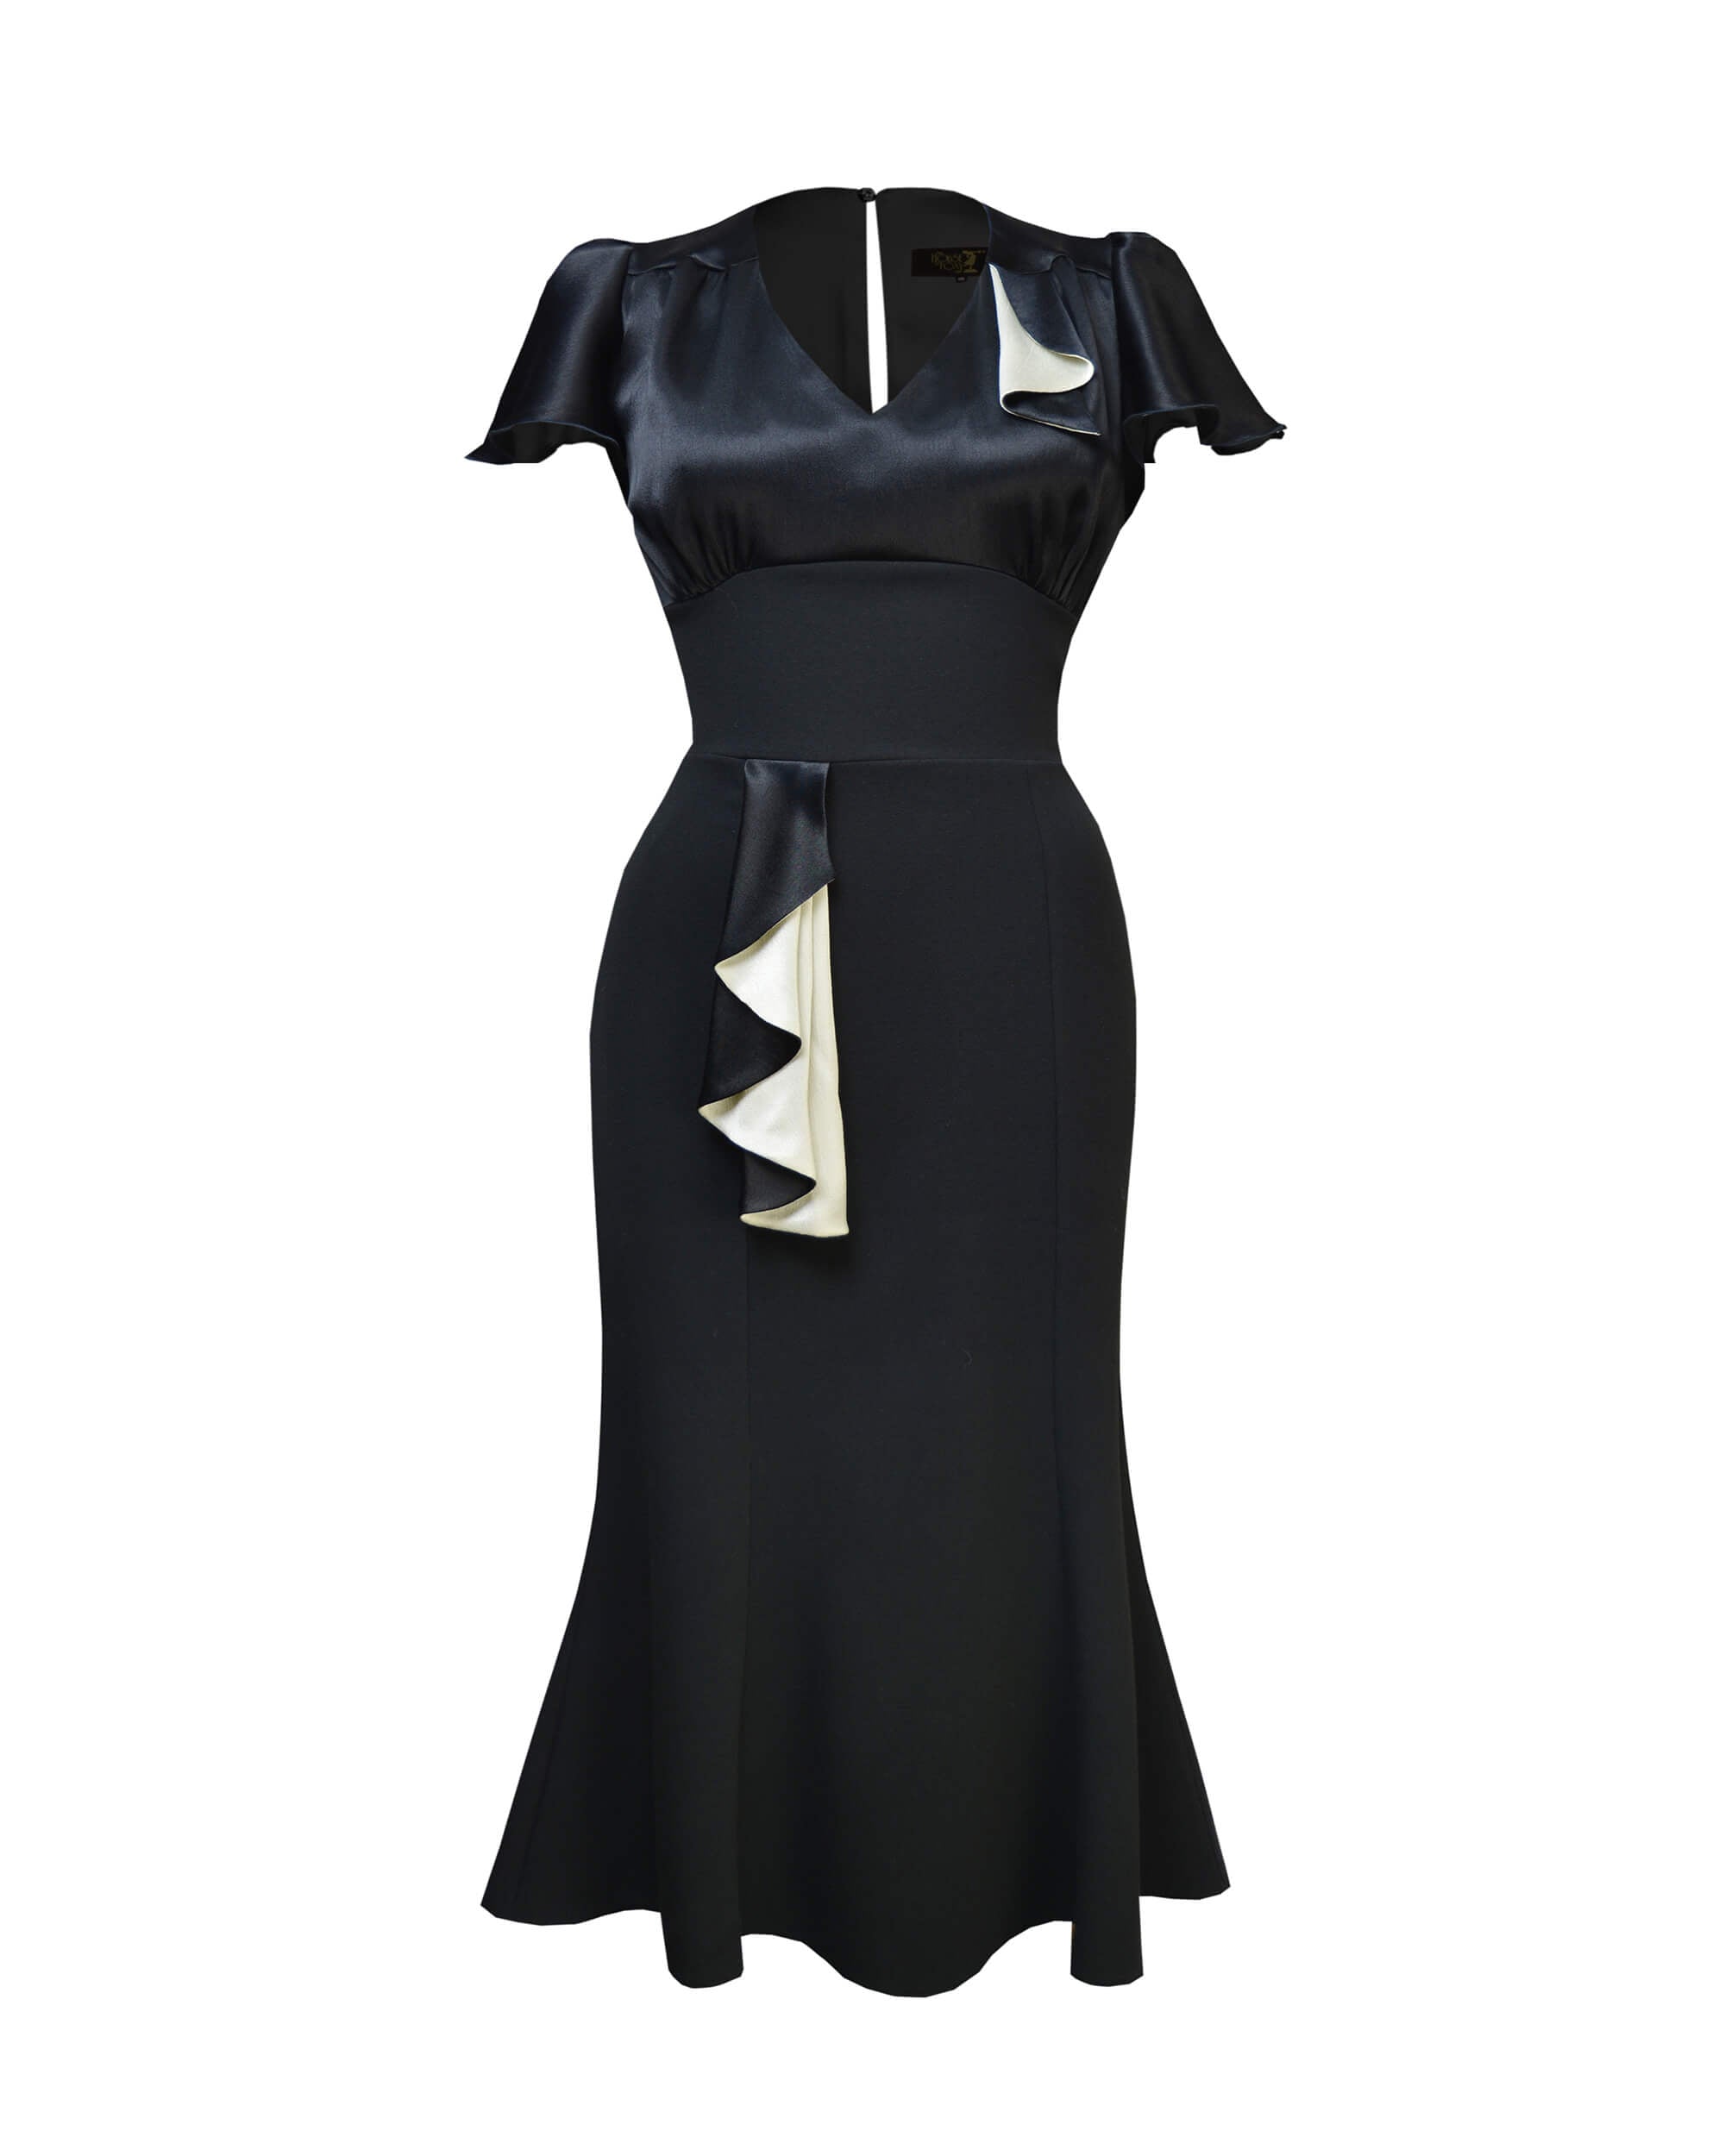 1930s Cabaret Flutter Dress - Black & Ivory